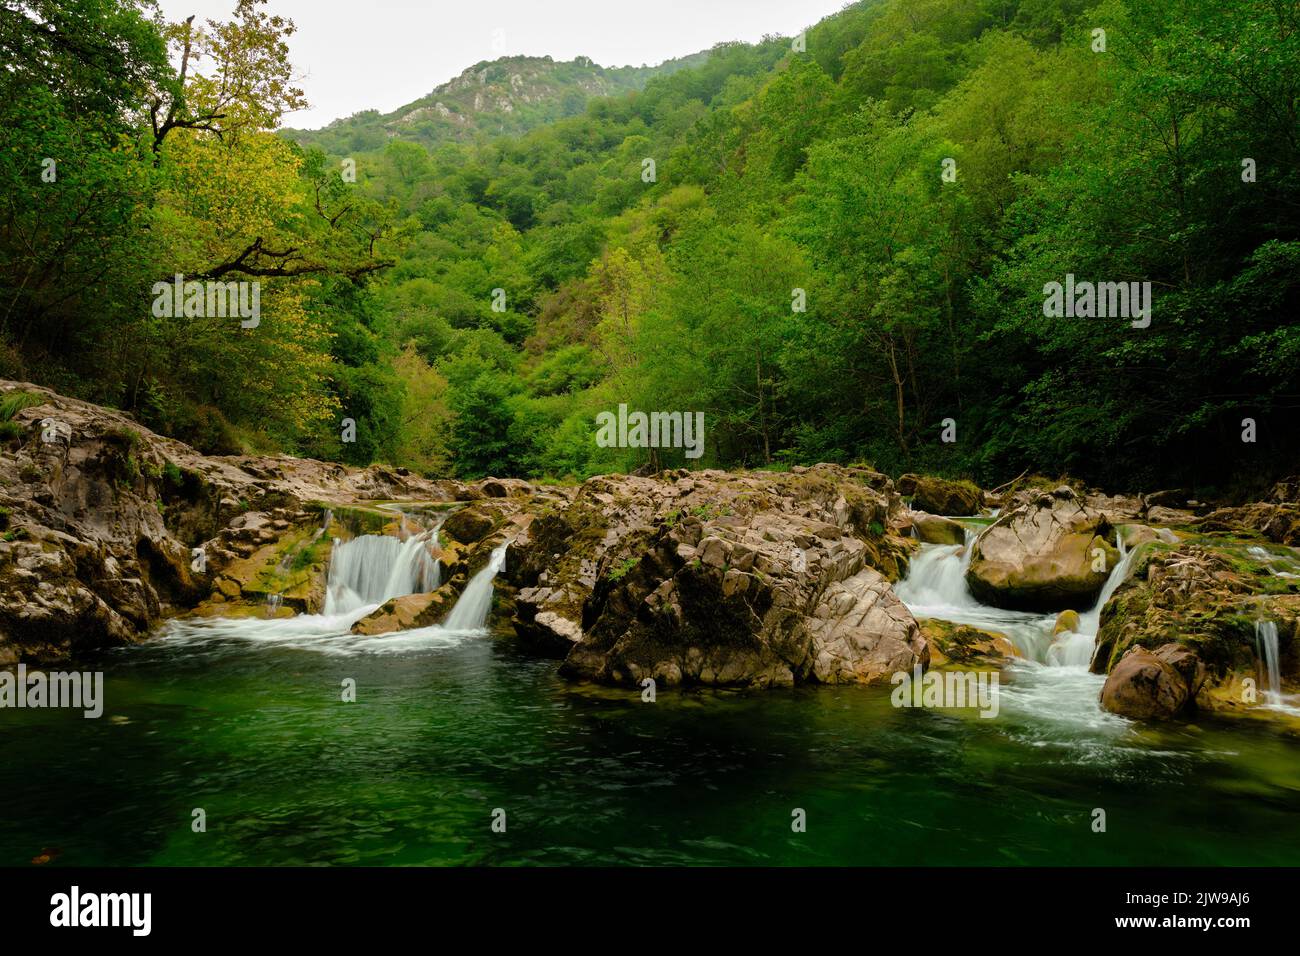 Landschaft von einigen kleinen Wasserfällen in einem Gebirgsfluss, weißes Wasser wird durch die Felsen des Flusses mit einem grünen Wald herum fallen gesehen Stockfoto